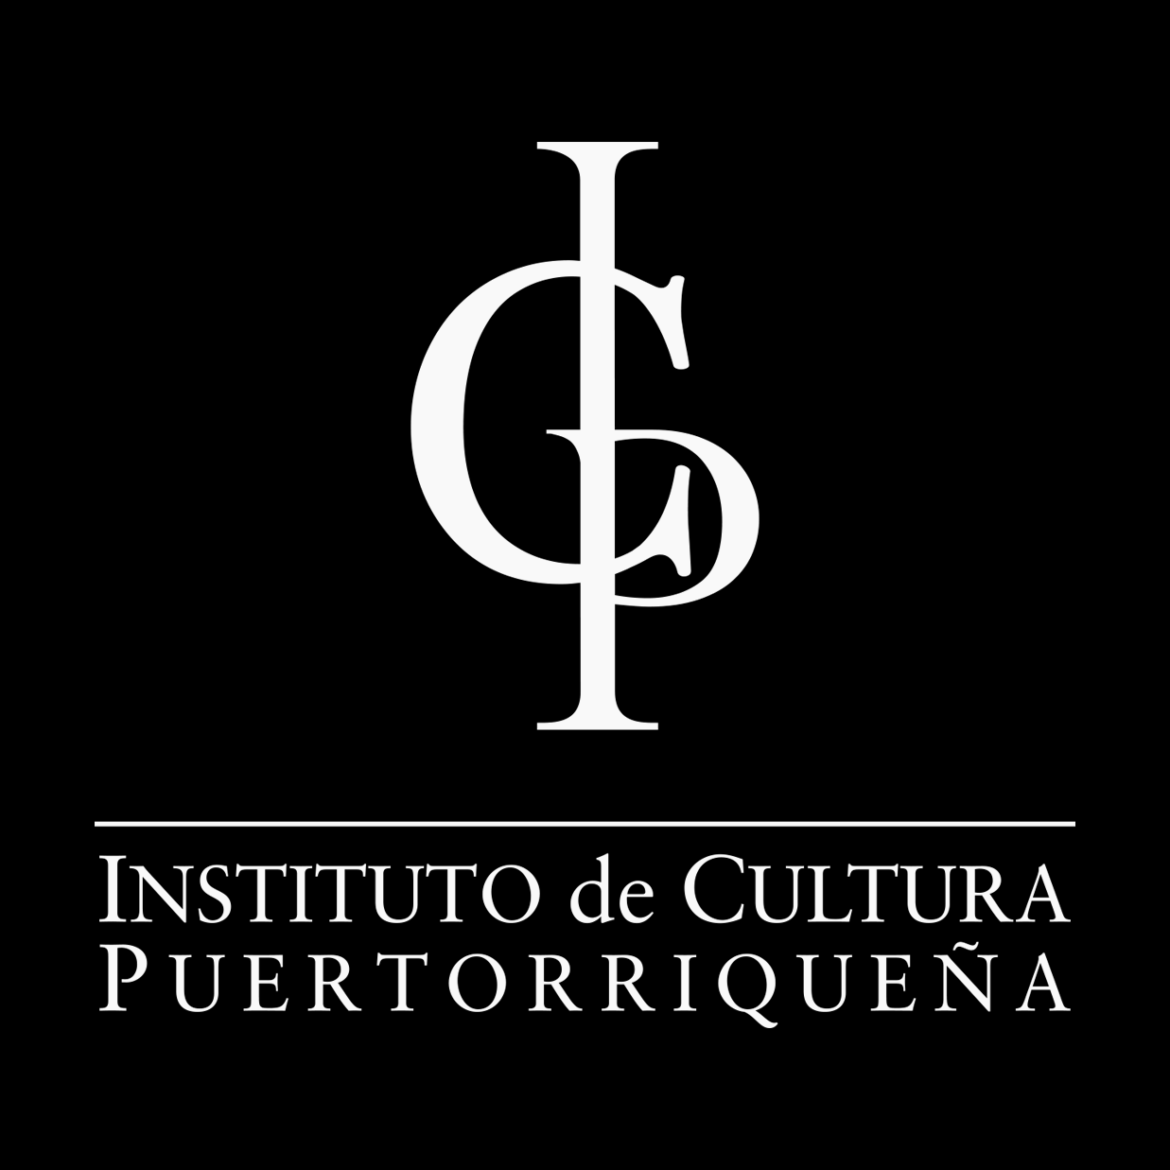 Instituto de Cultura Puertorriqueña anuncia la disponibilidad de $500 mil para subvenciones a organizaciones culturales